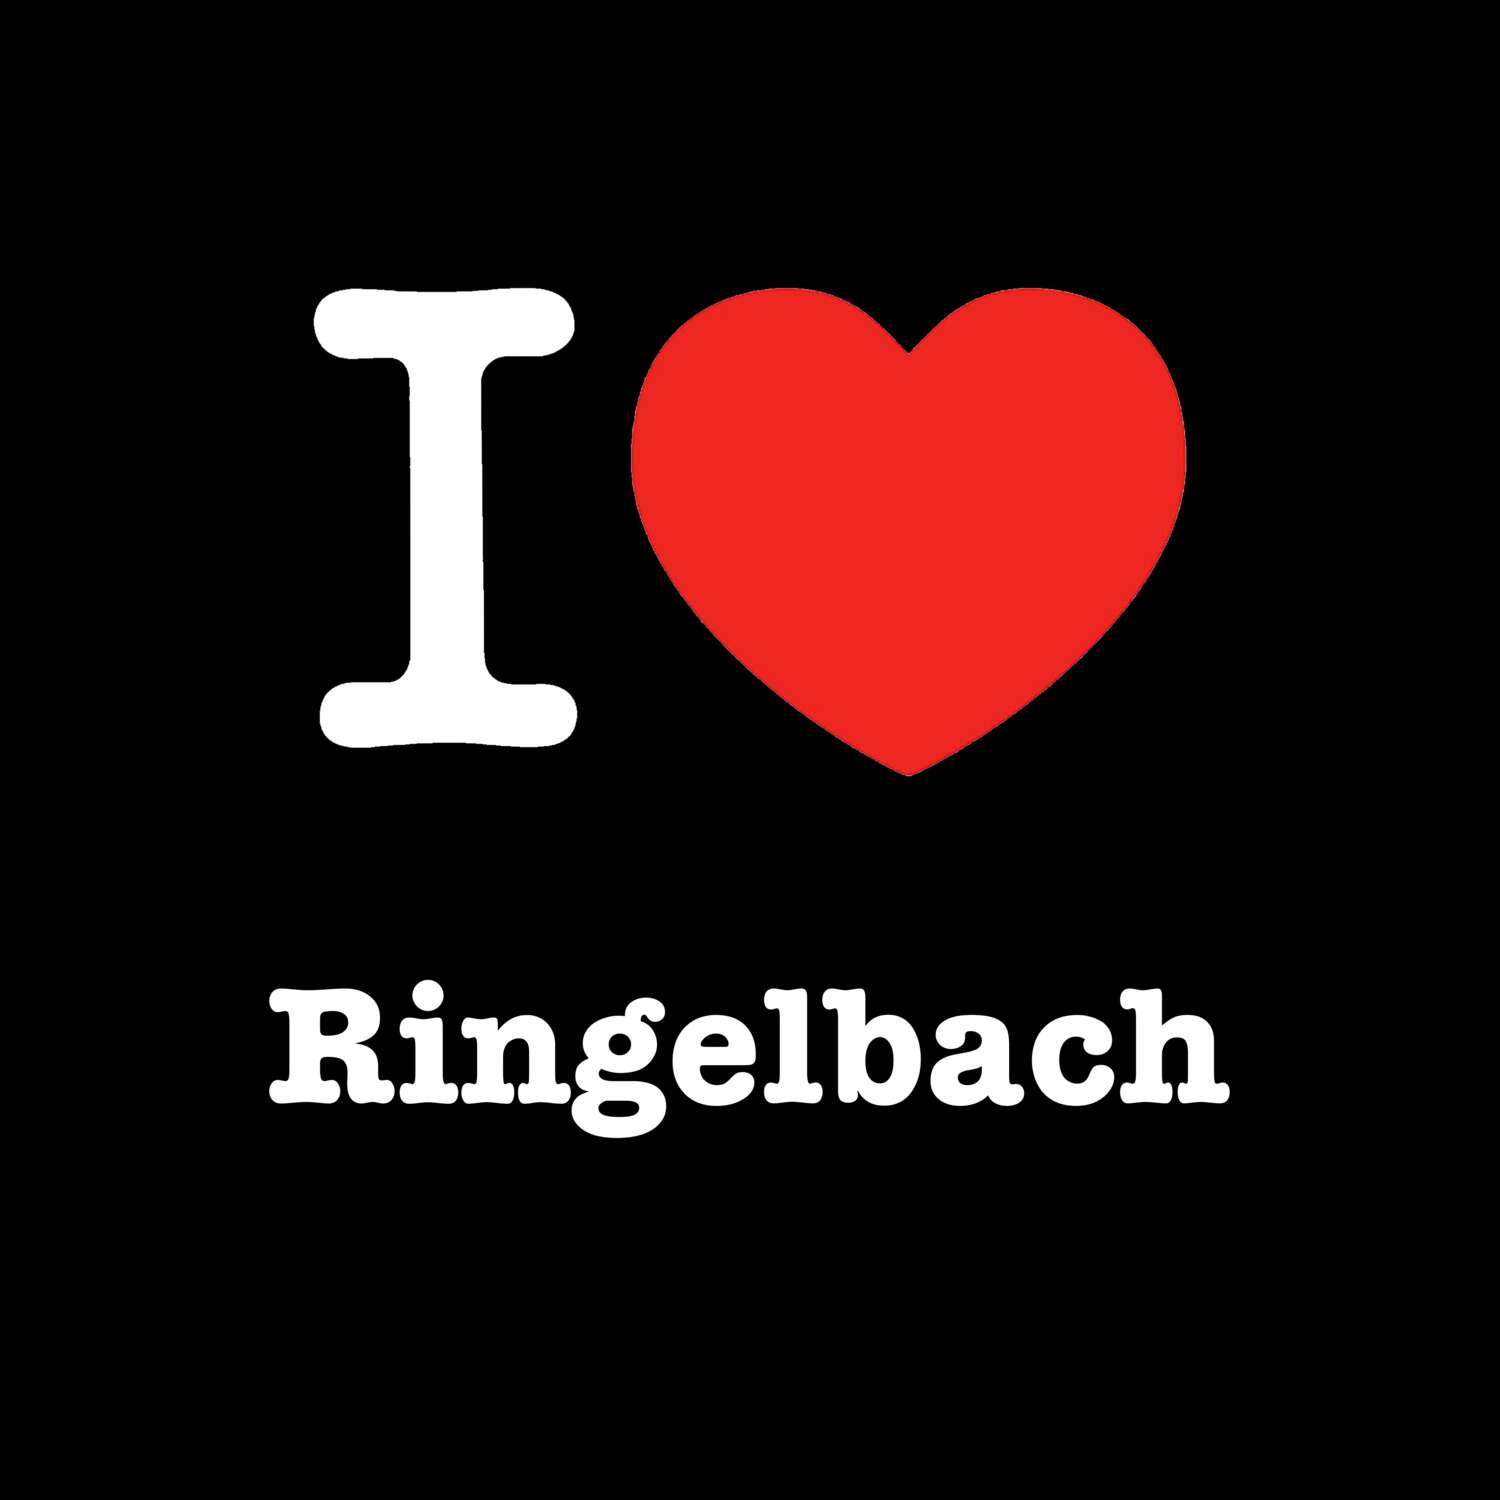 Ringelbach T-Shirt »I love«